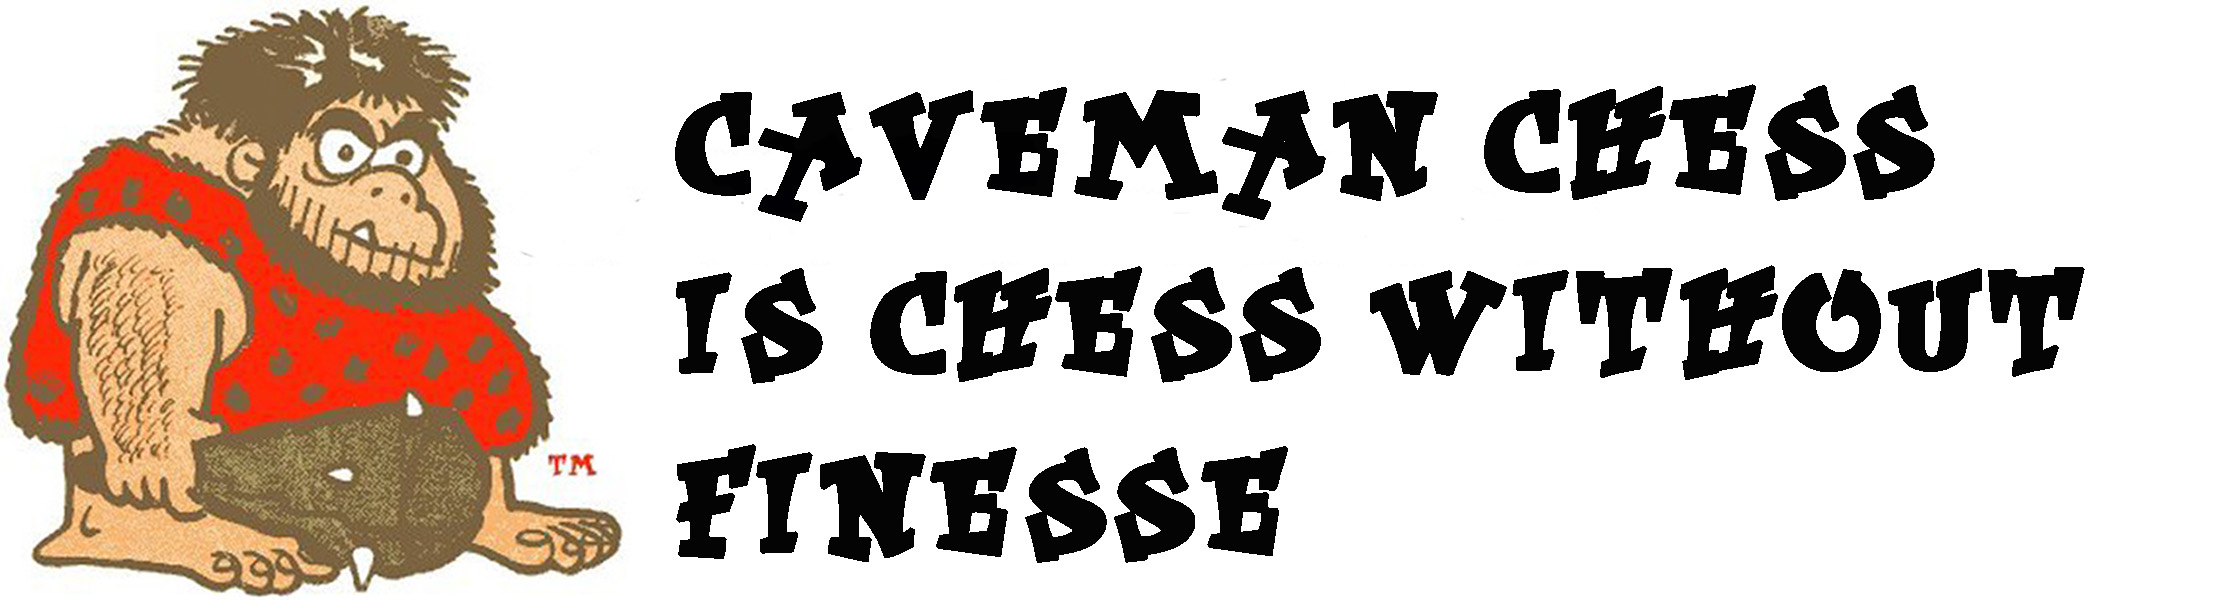 Caveman Chess